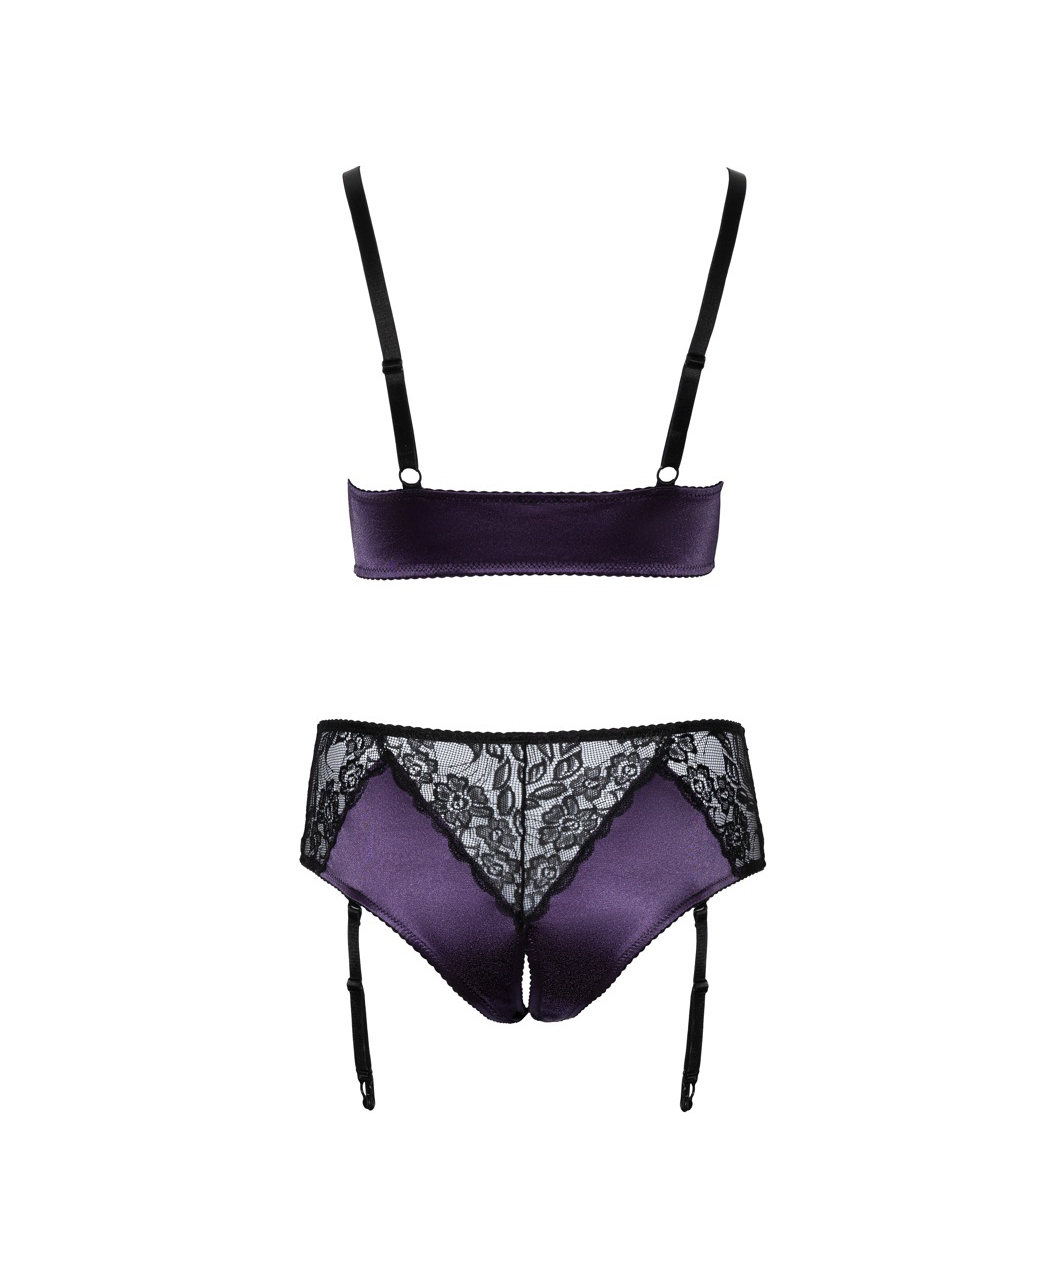 Cottelli Lingerie purple suspender lingerie set with black lace